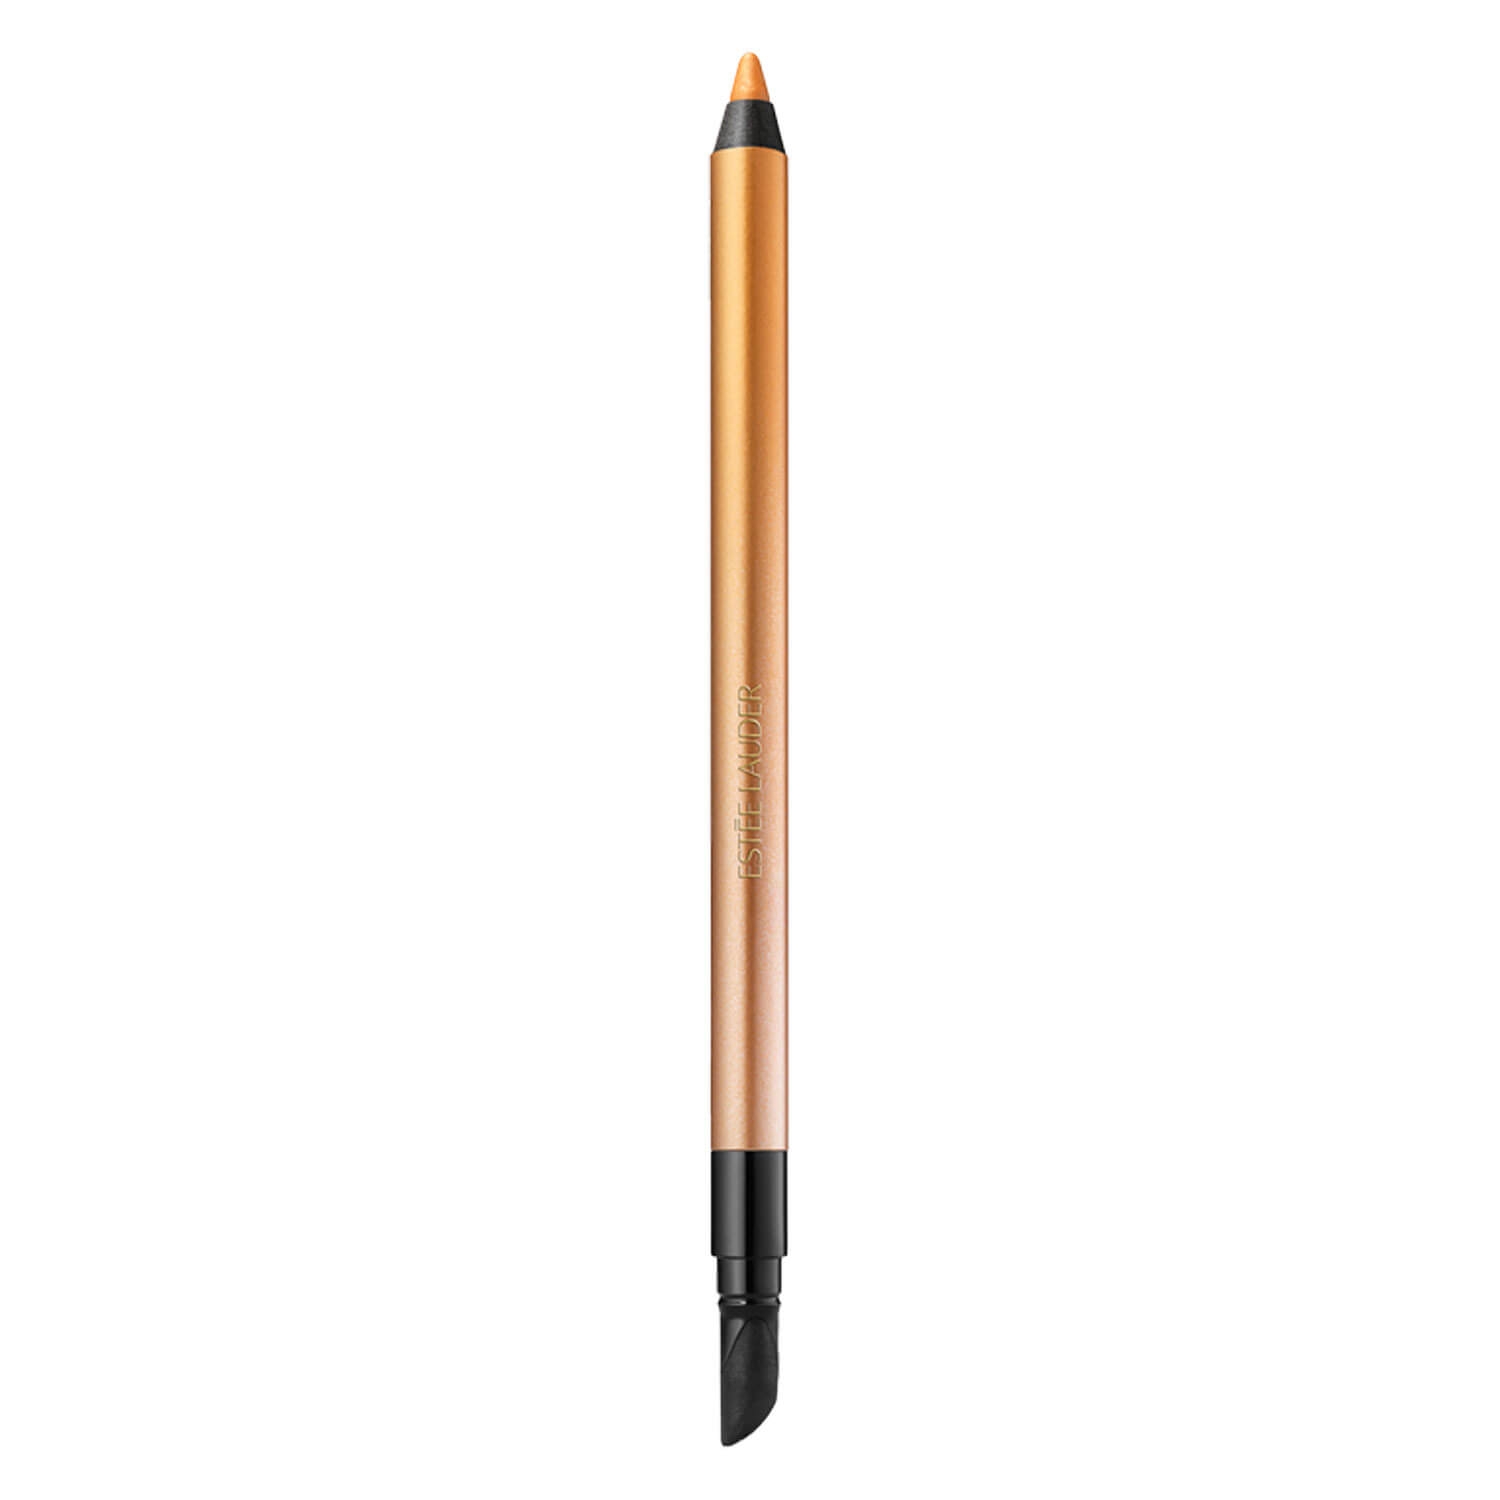 Produktbild von Double Wear - 24H Waterproof Gel Eye Pencil Gilded Metal